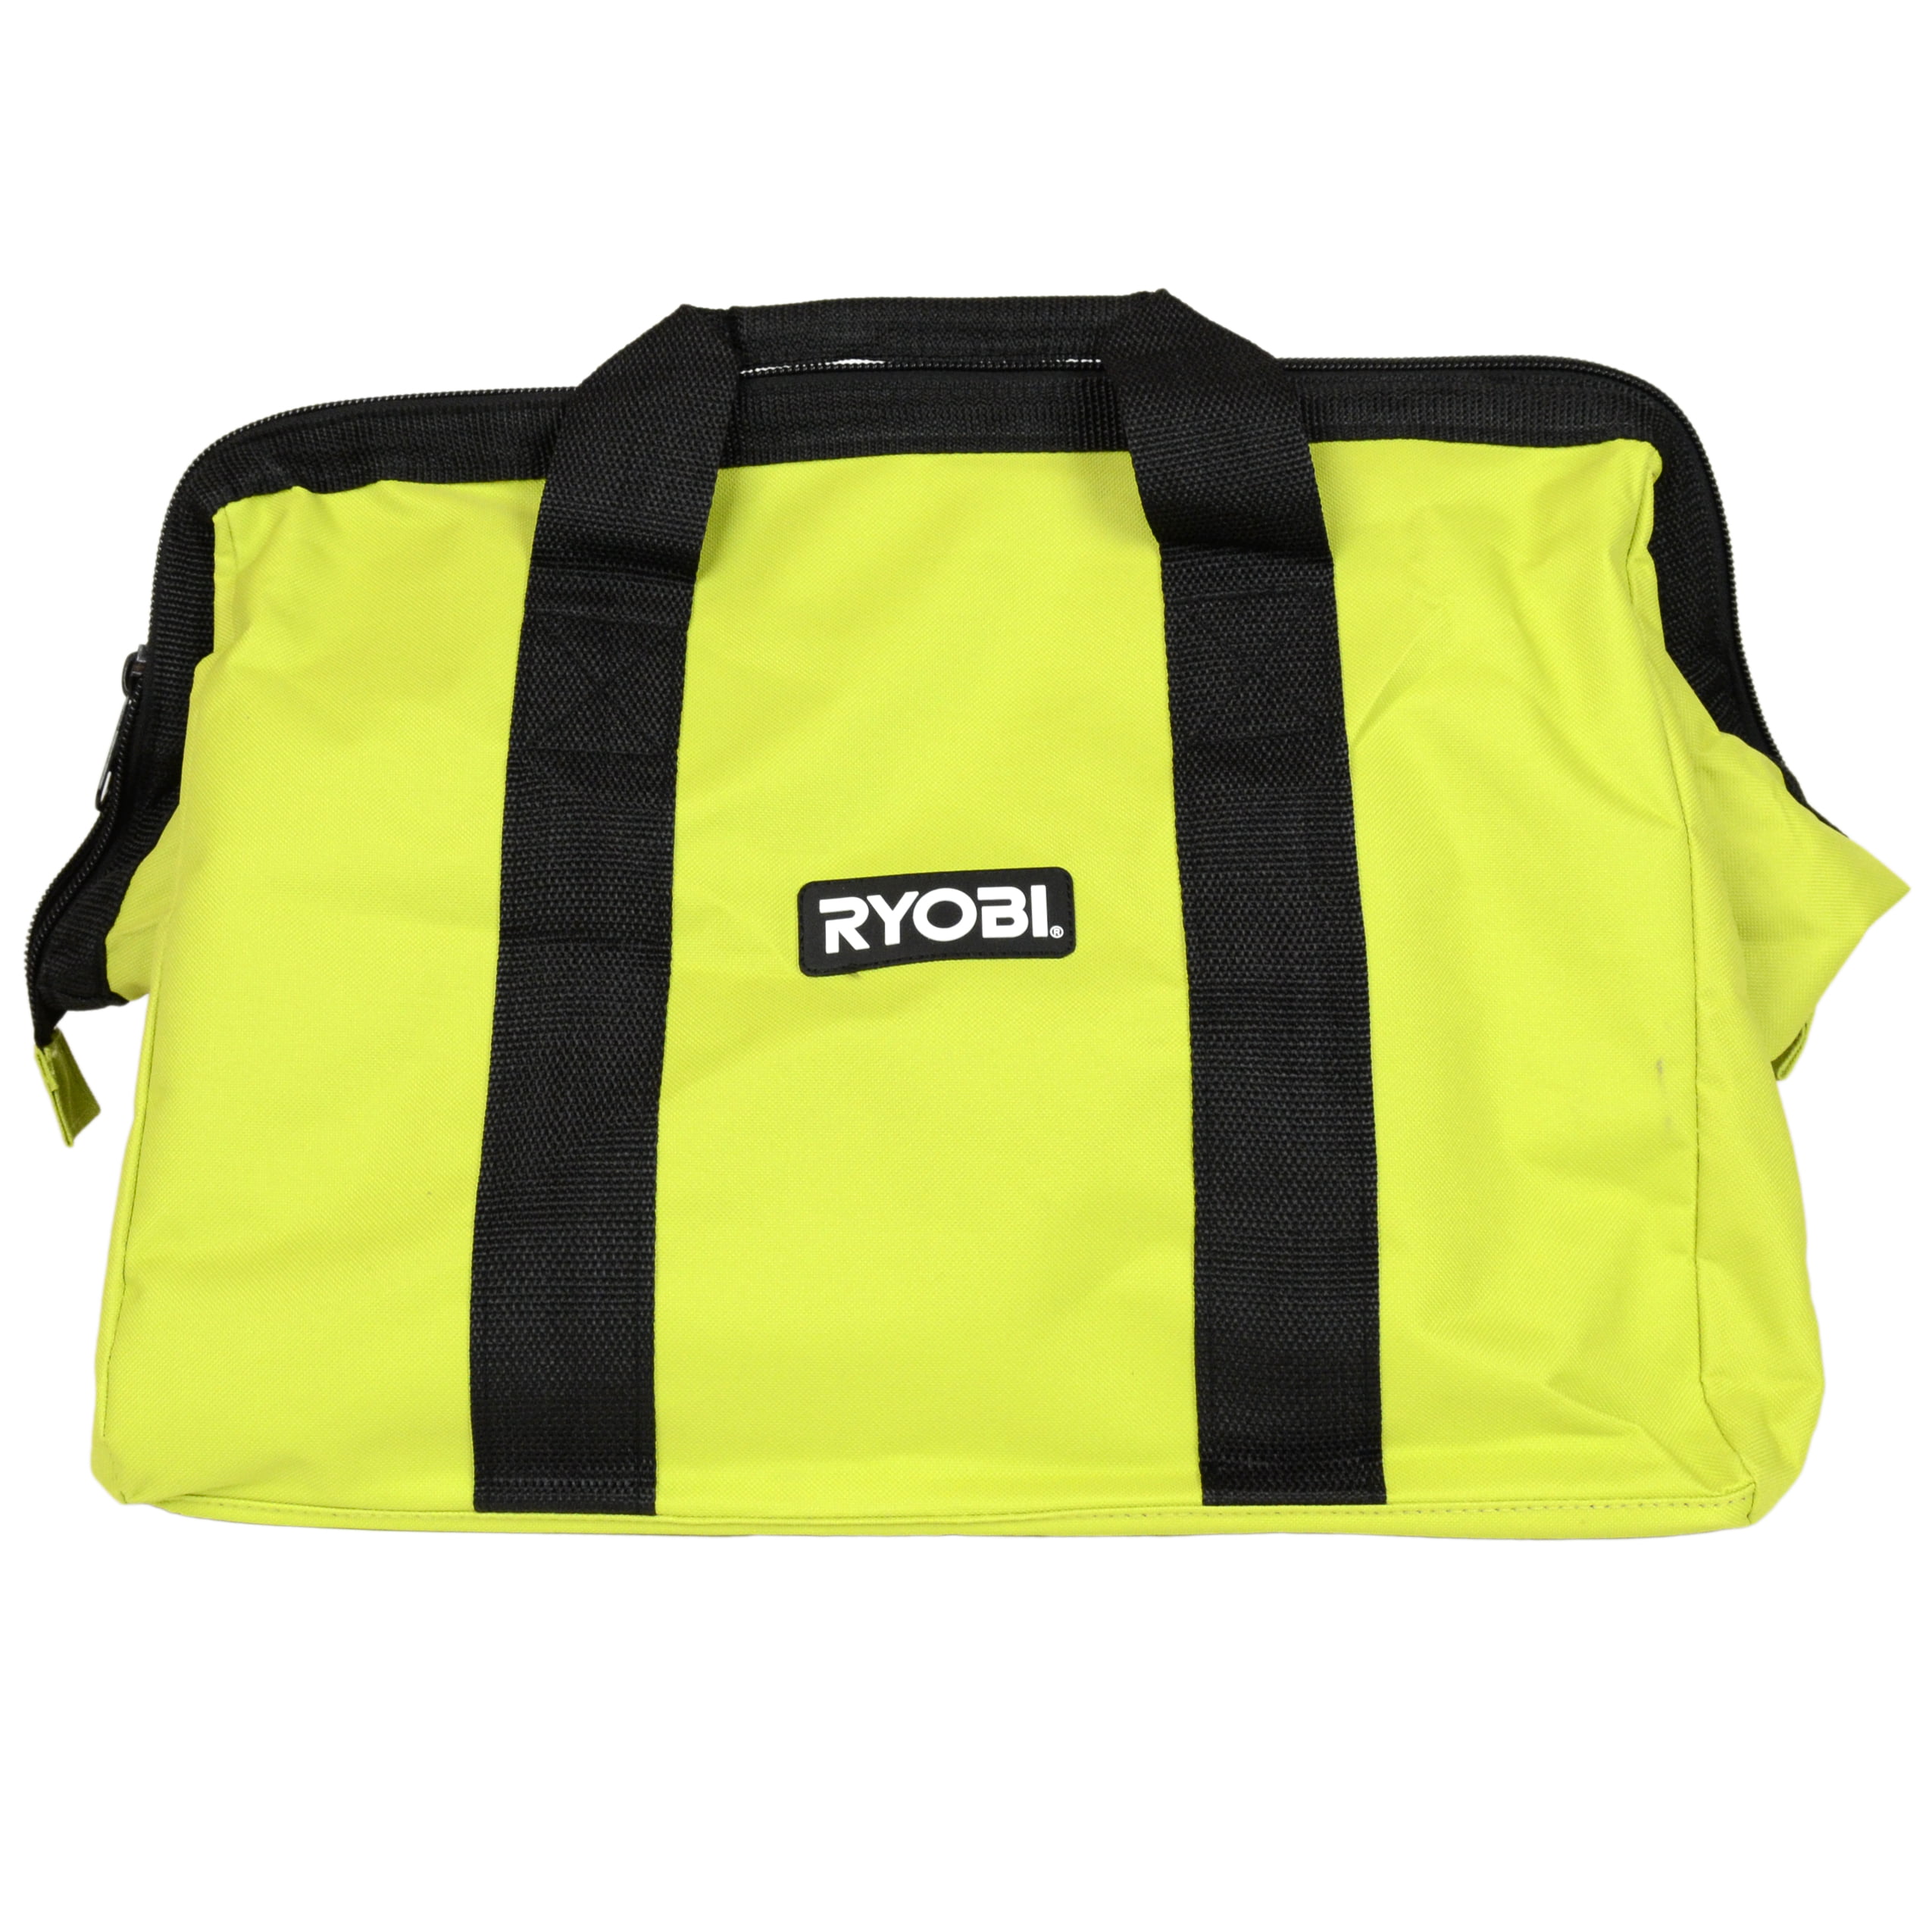 Ryobi Storage Bag 18 x 14 x 12 Brand New 